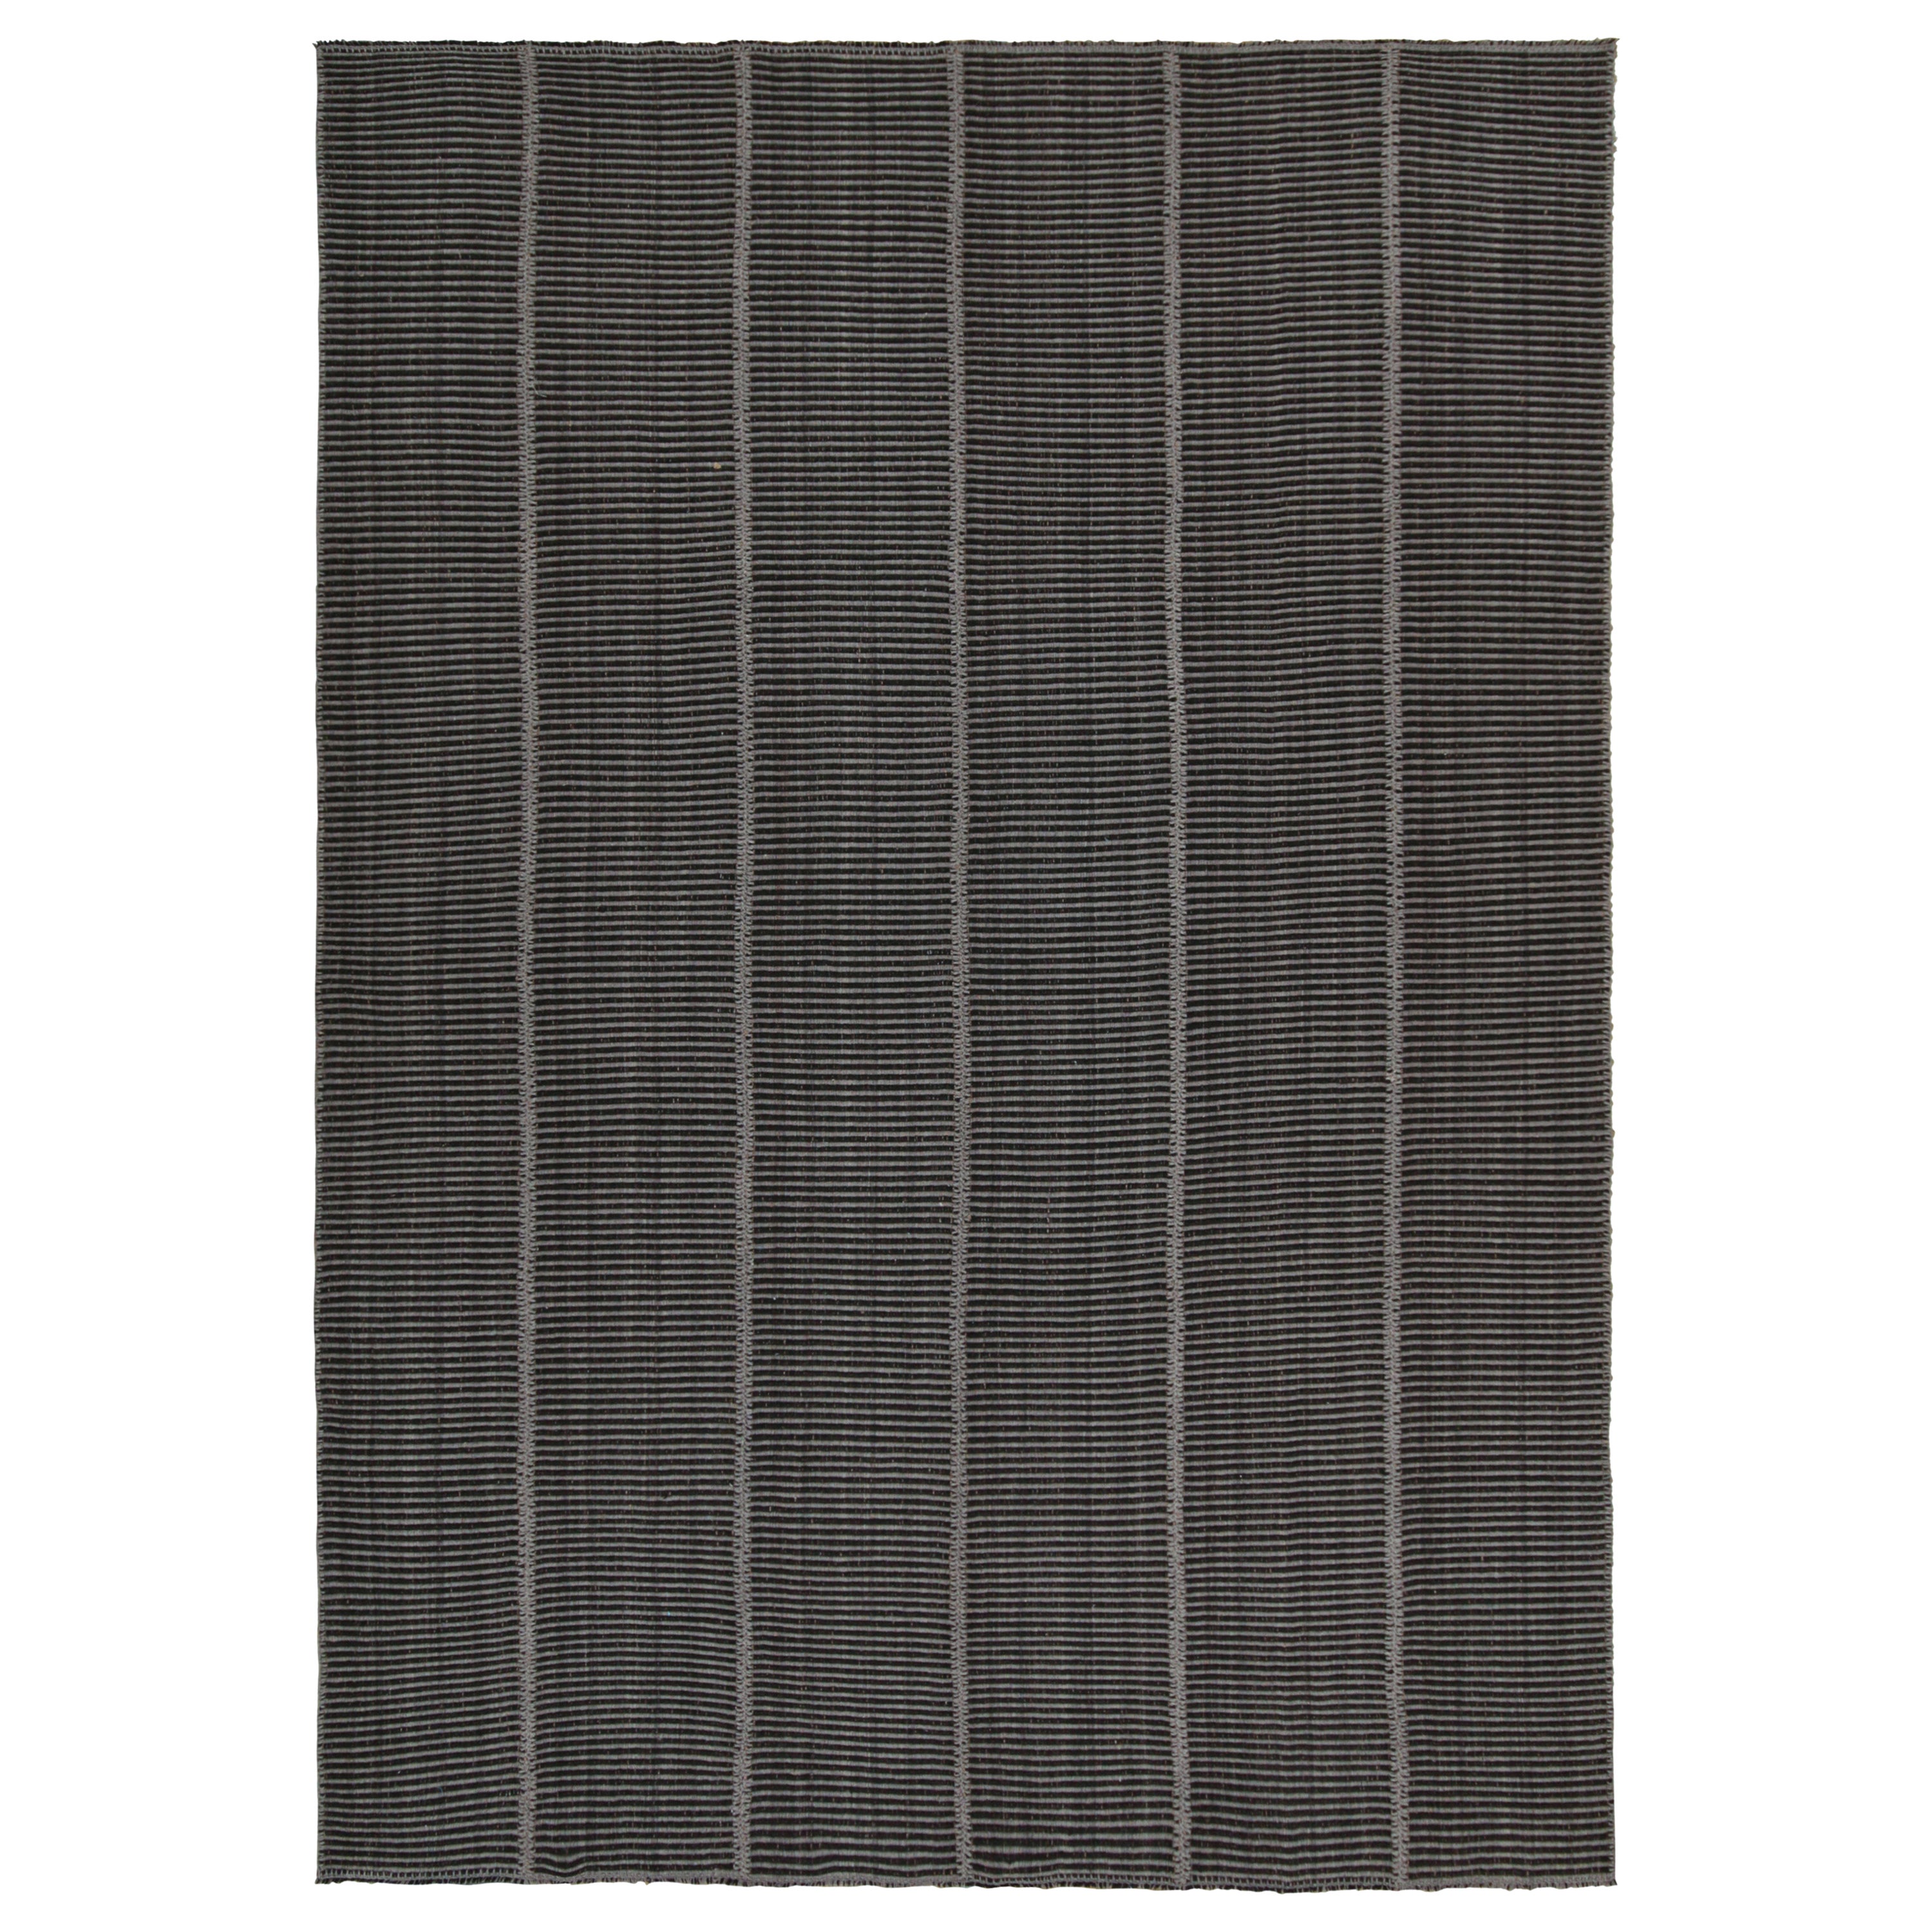 Rug & Kilim’s Contemporary Kilim in Grey & Black Stripes